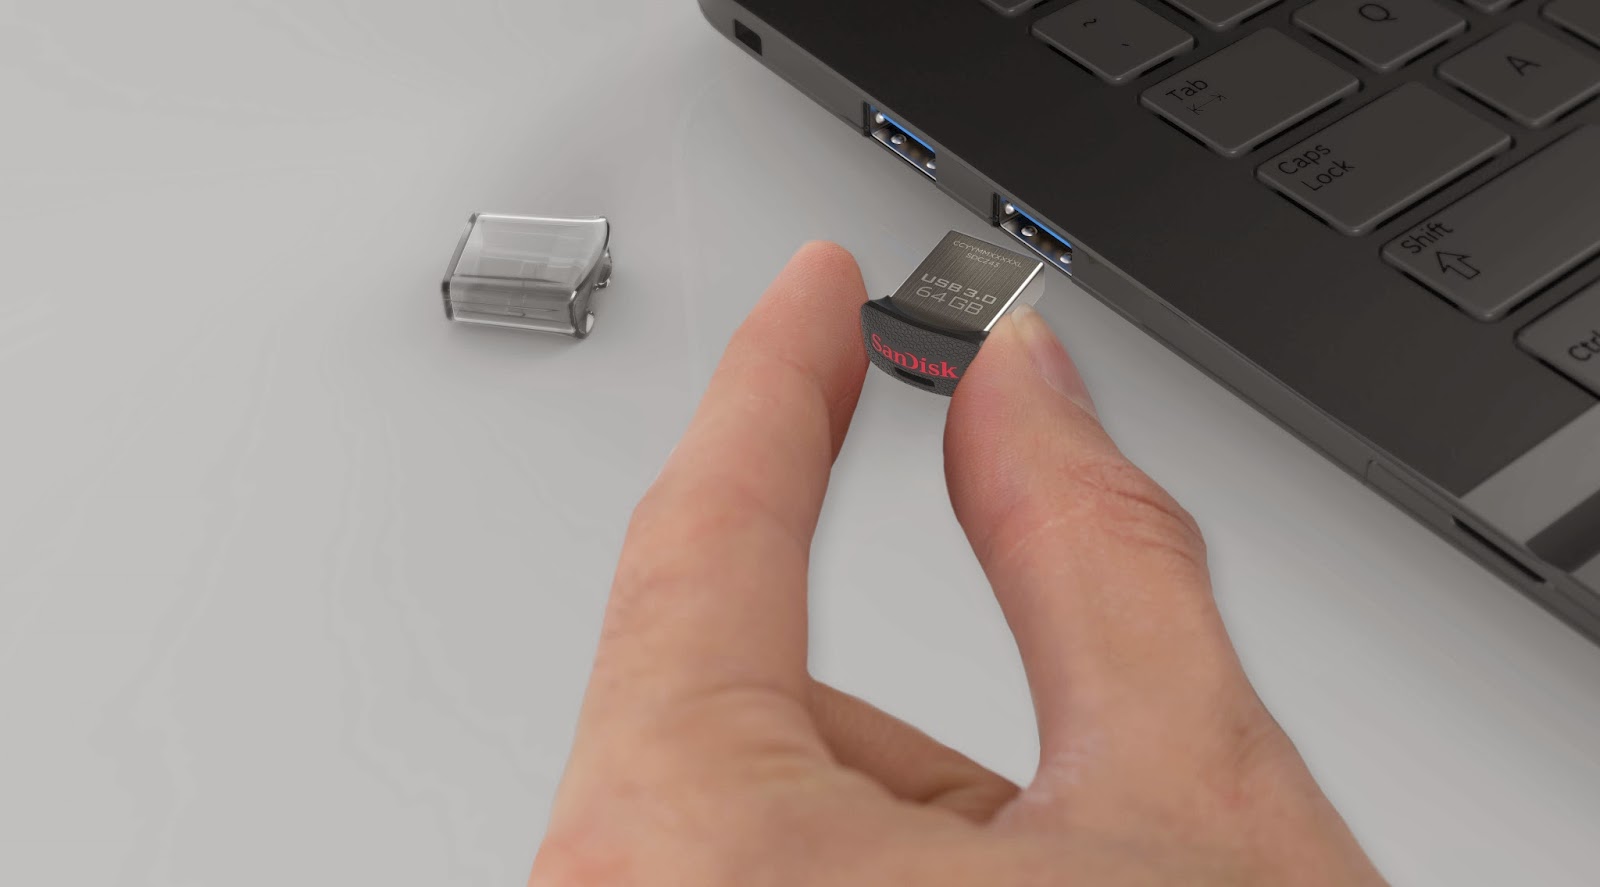 SanDisk Ultra Fit USB 3.0 Flash Drive